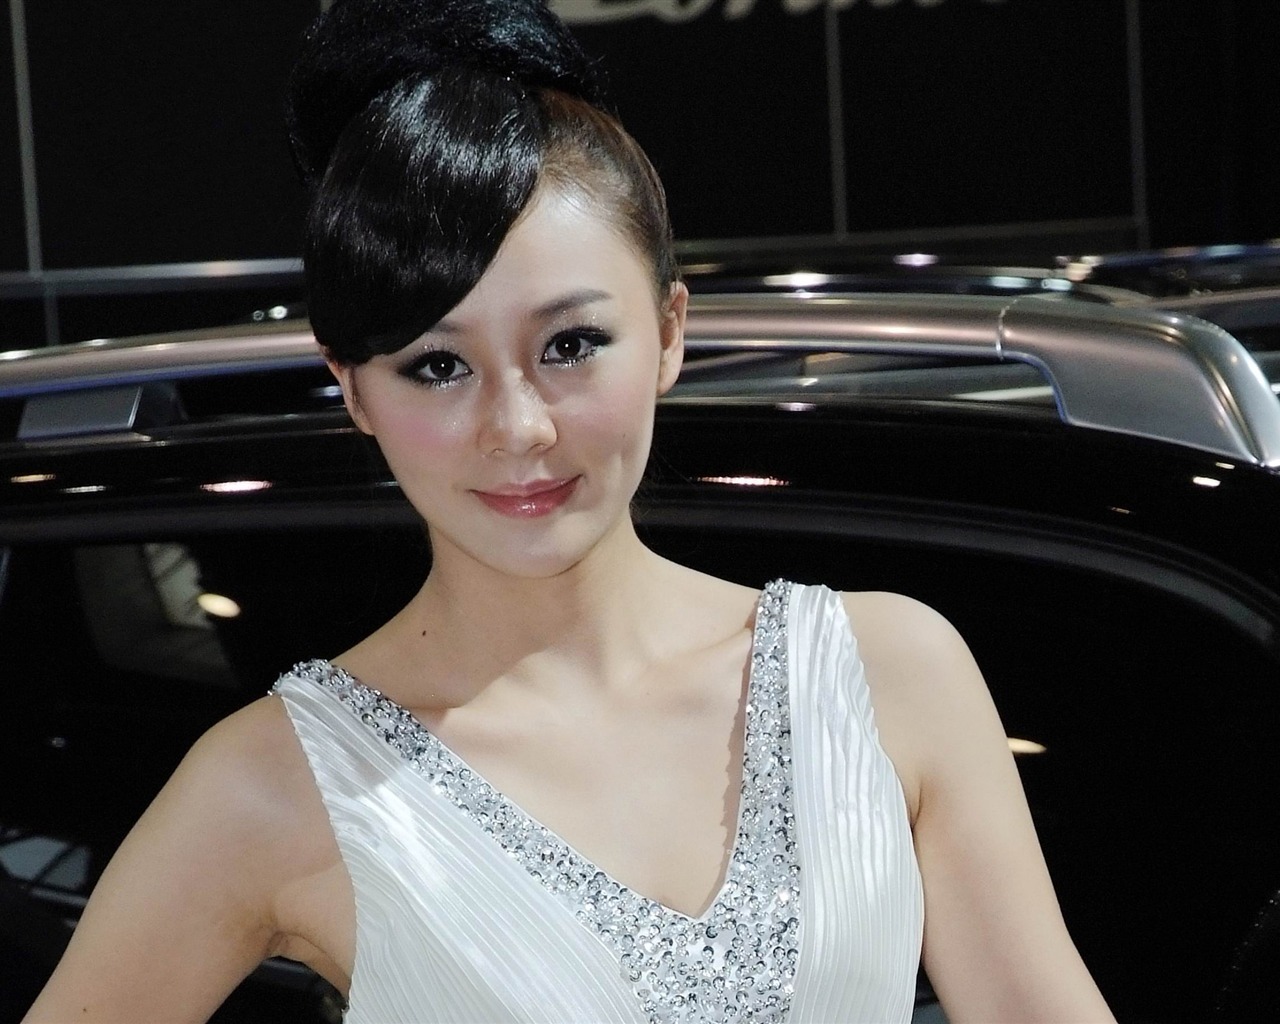 2010北京国际车展 美女车模 (螺纹钢作品)10 - 1280x1024